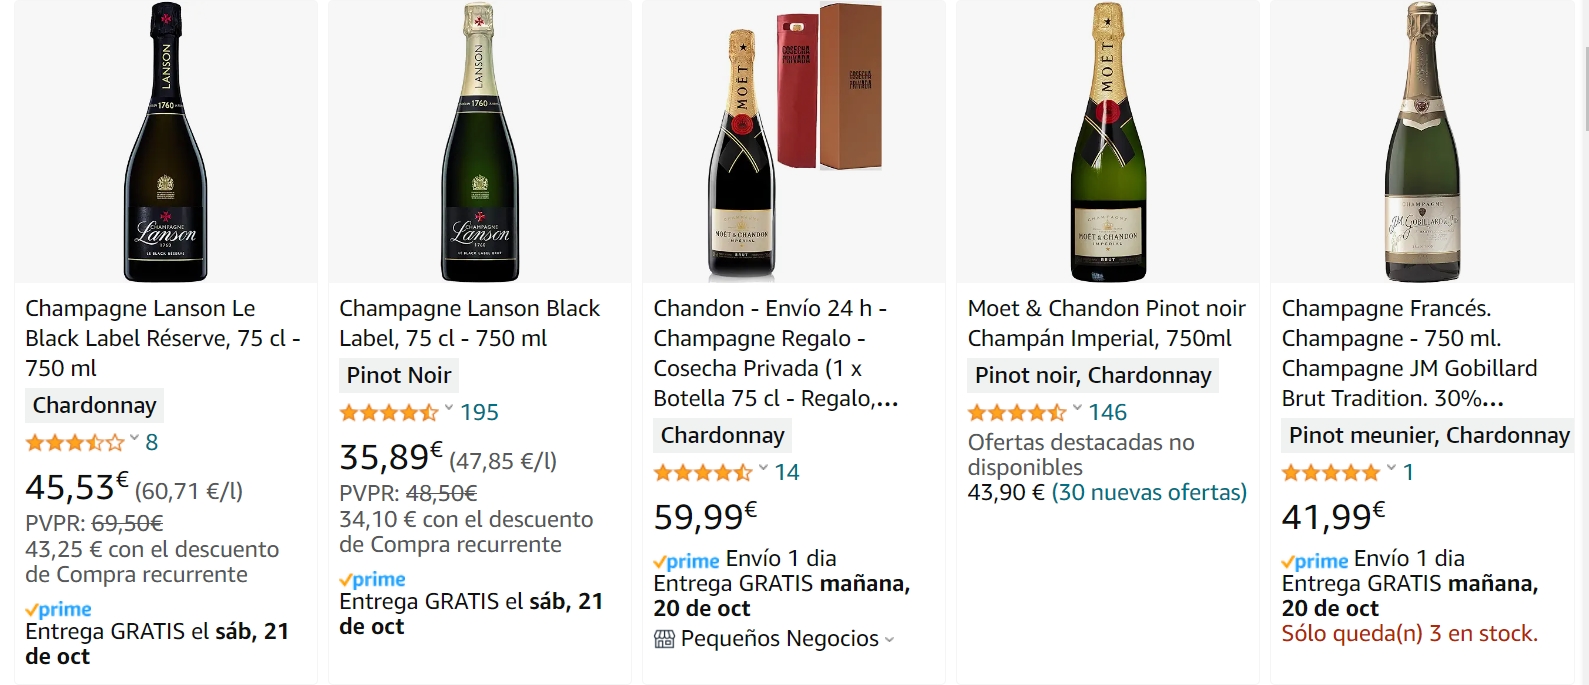 Mejor champagne calidad precio